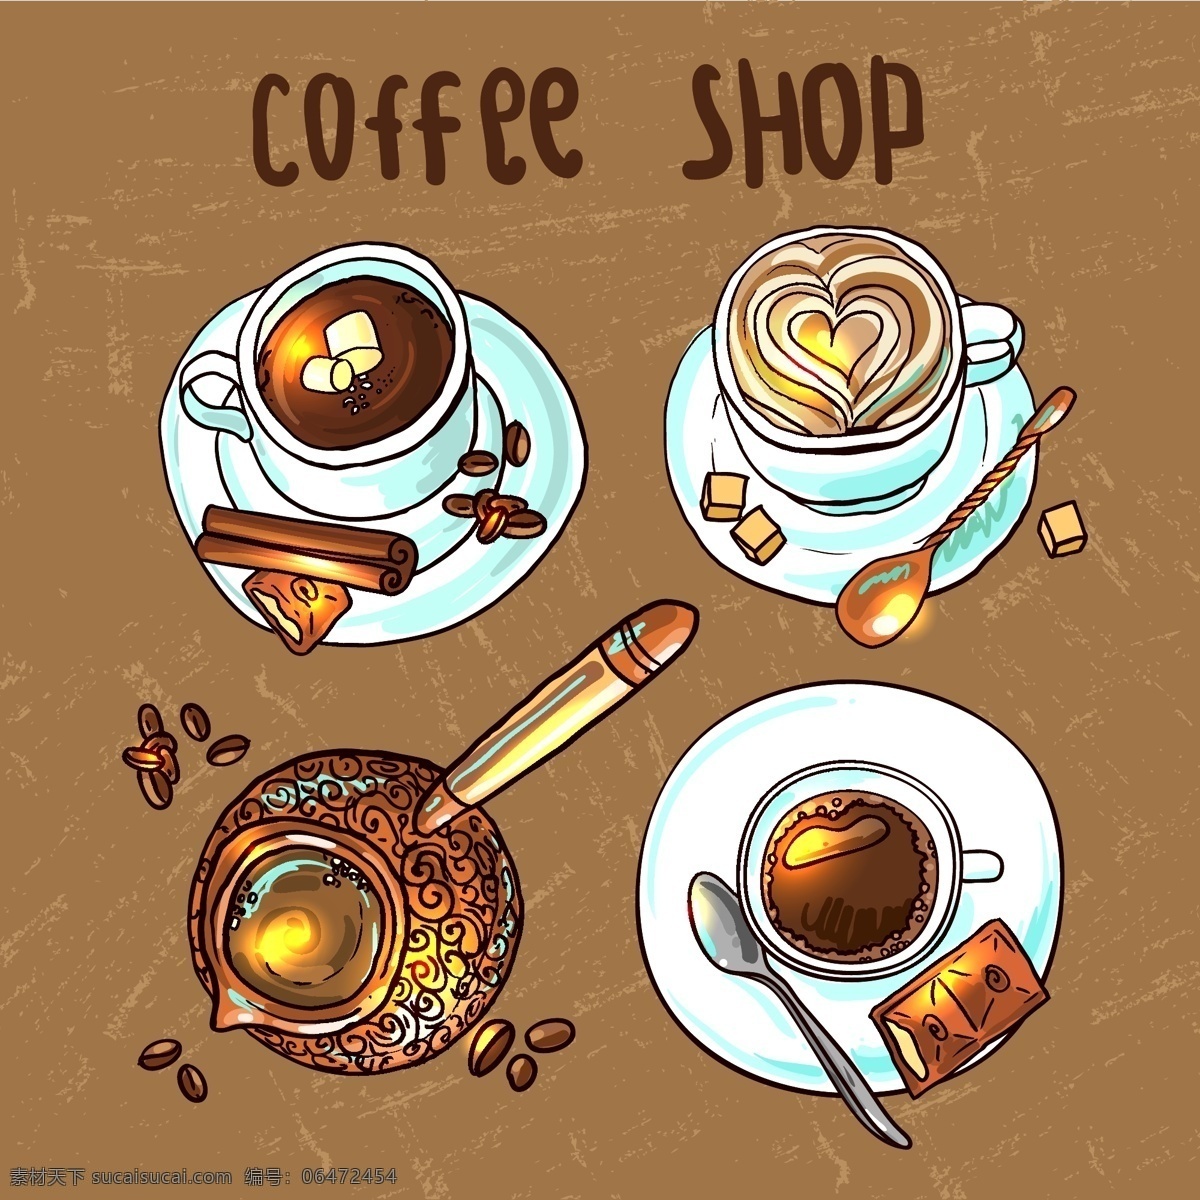 咖啡豆 咖啡 海报 矢量 复古风格 矢量素材 设计素材 背景素材